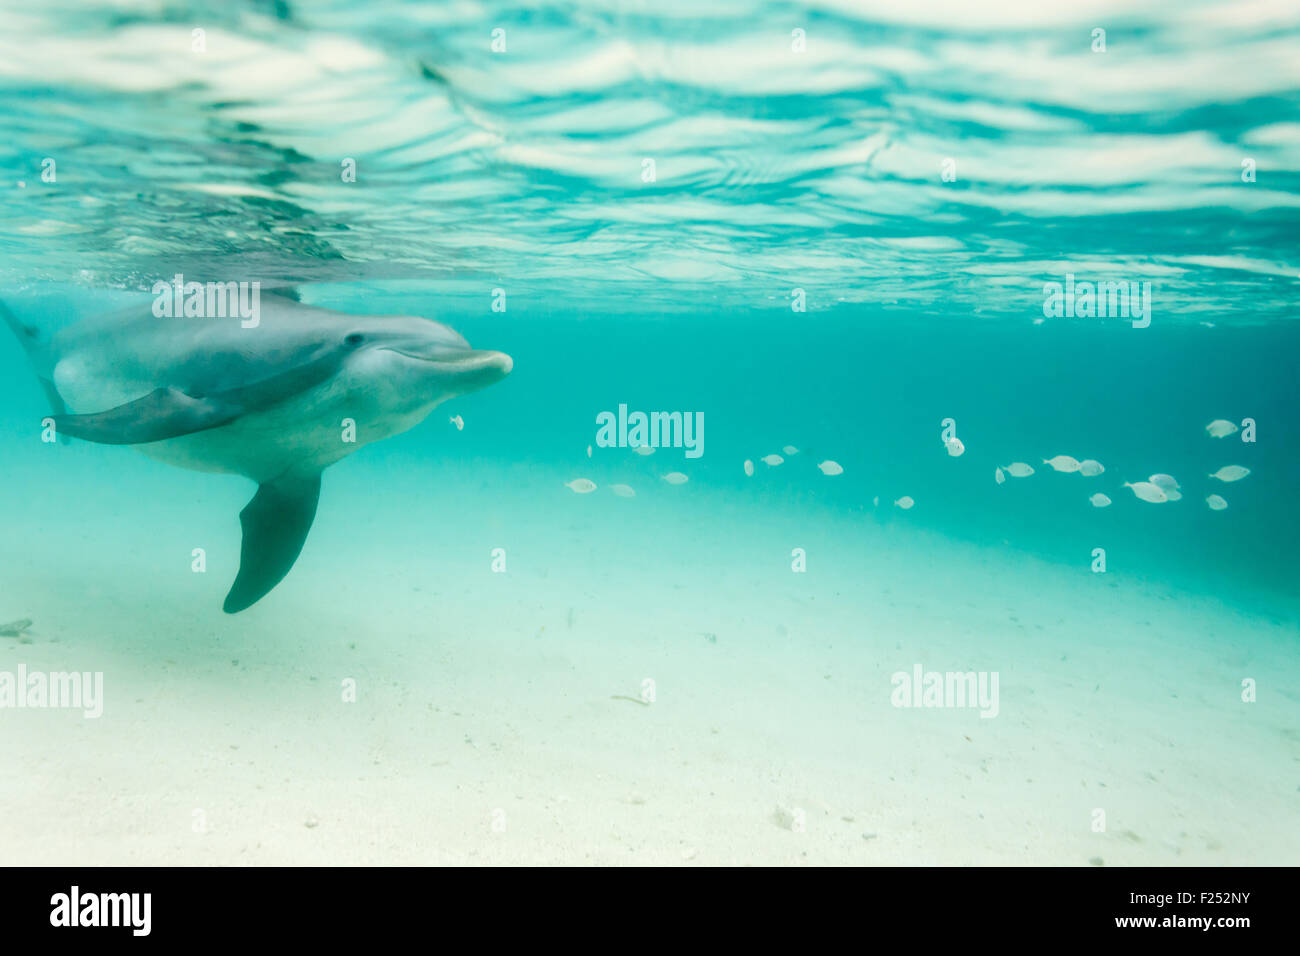 Il tursiope o delfino maggiore nuoto sott'acqua Foto Stock